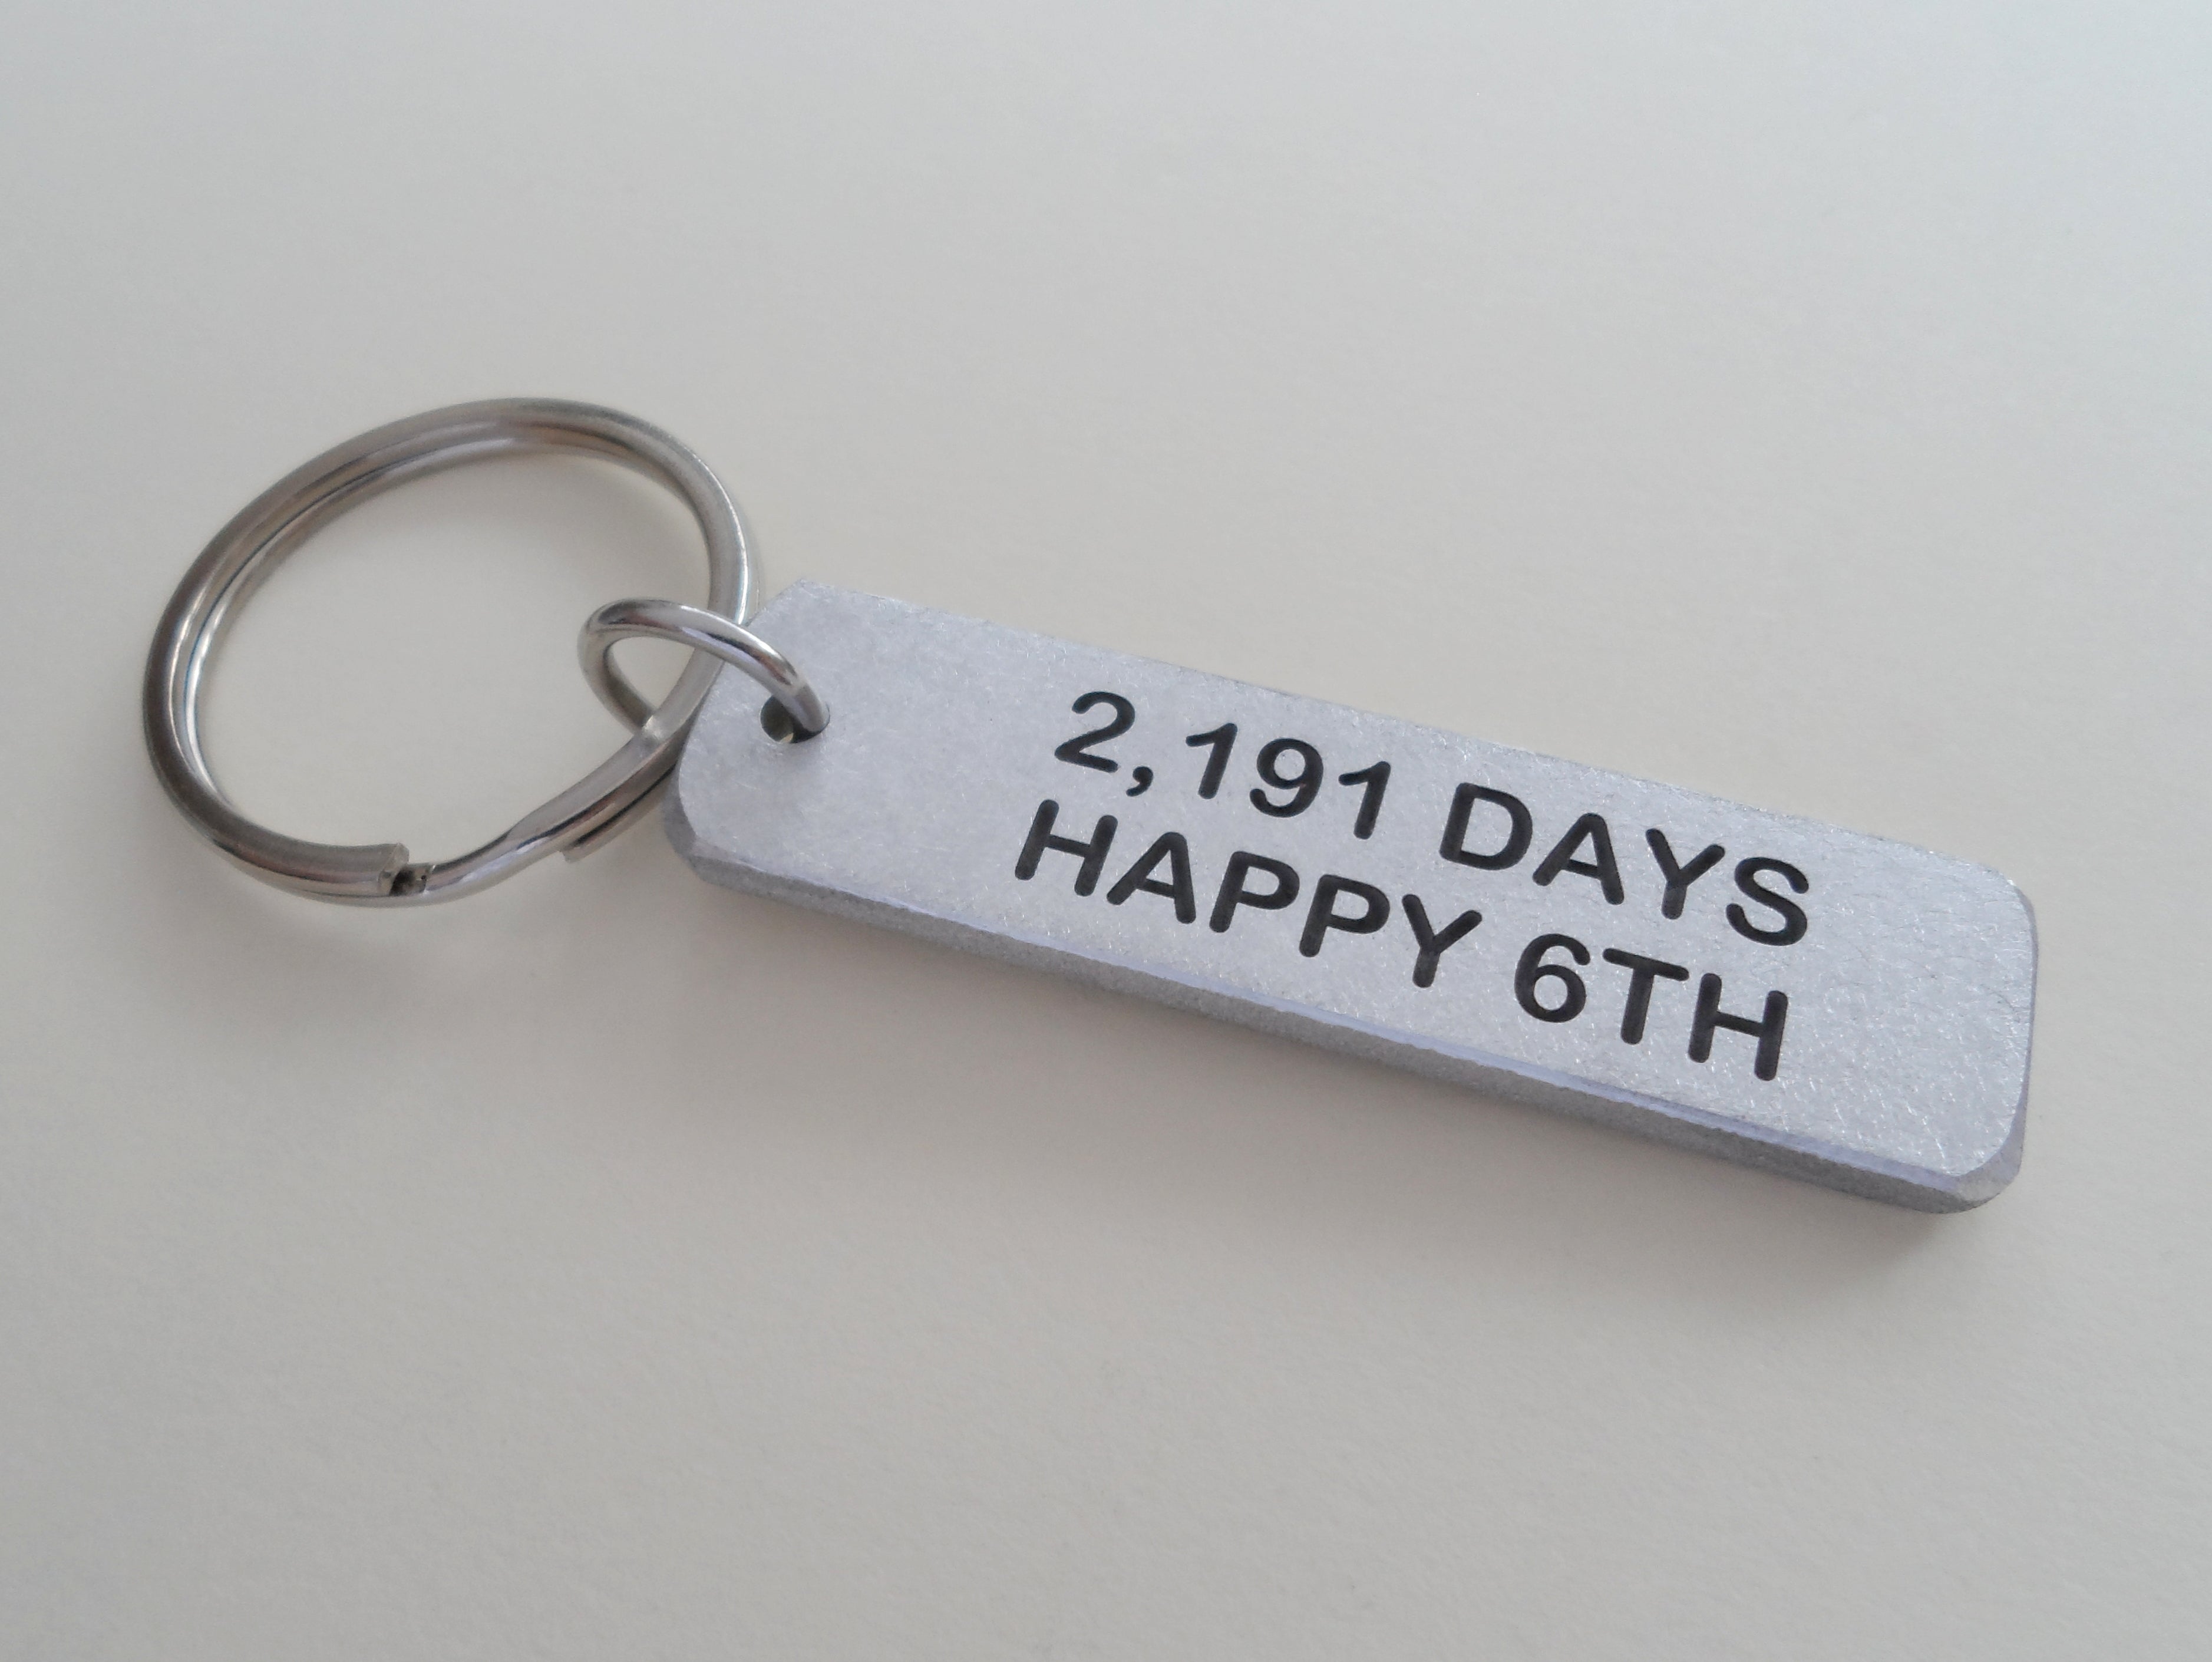 2191_DAYS_happy_6th_aluminum_keychain_anniversary_gift.JPG